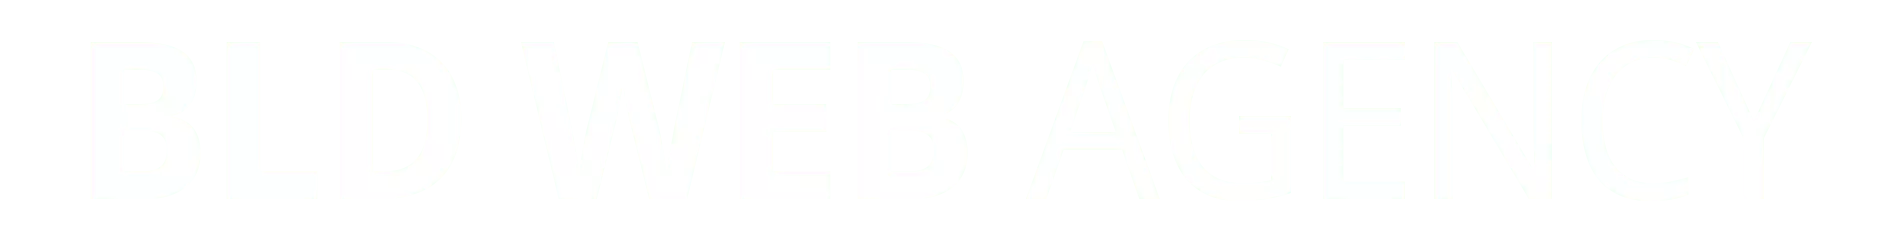 logo-bldwebagency-base-light